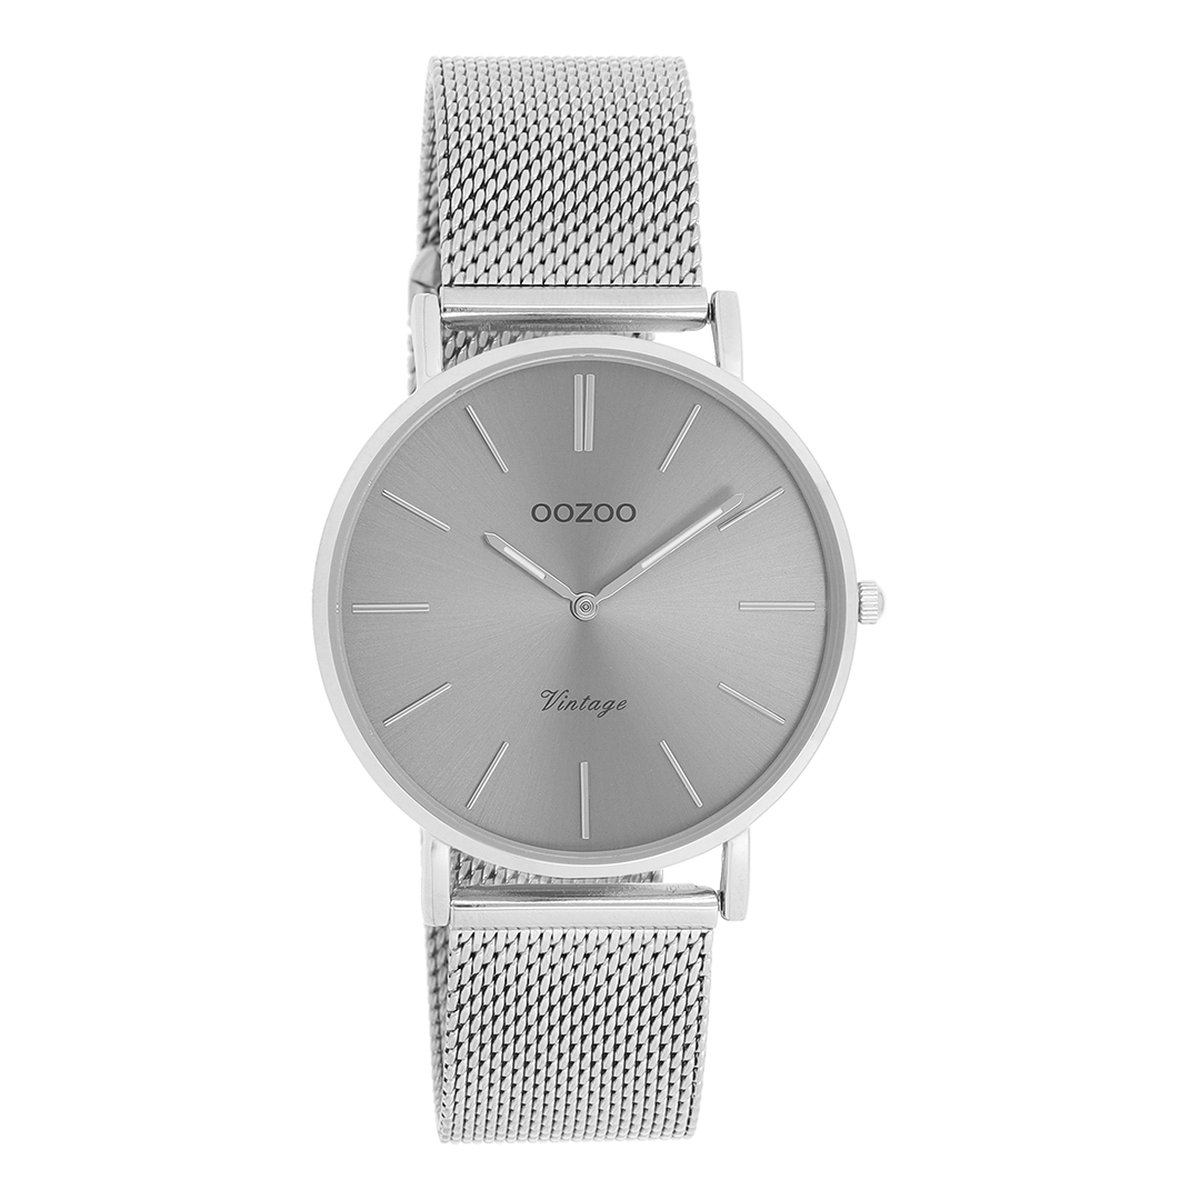 OOZOO Vintage series - zilverkleurige horloge met zilverkleurige metalen mesh armband - C9938 - Ø36